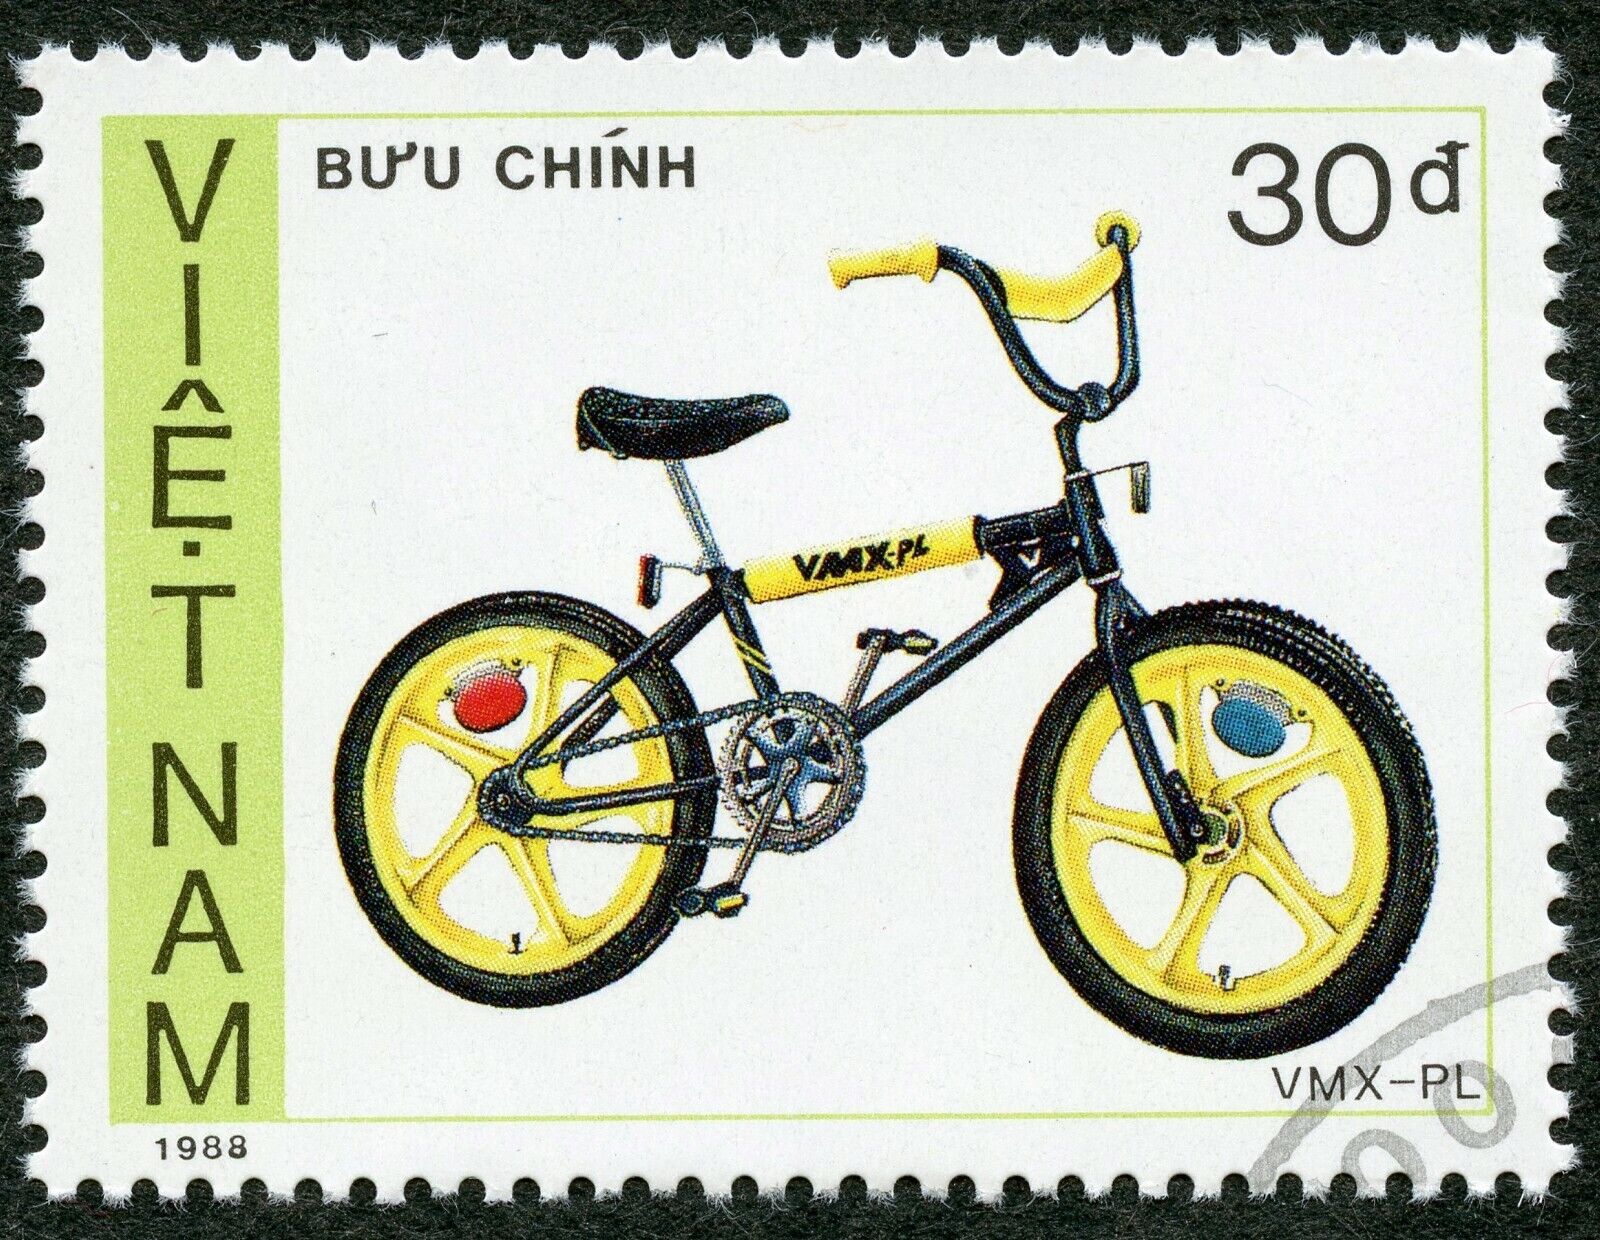 Bicycles: Cycling, Vmx-pl Bicycle, 1989 Vietnam, Scott #1961